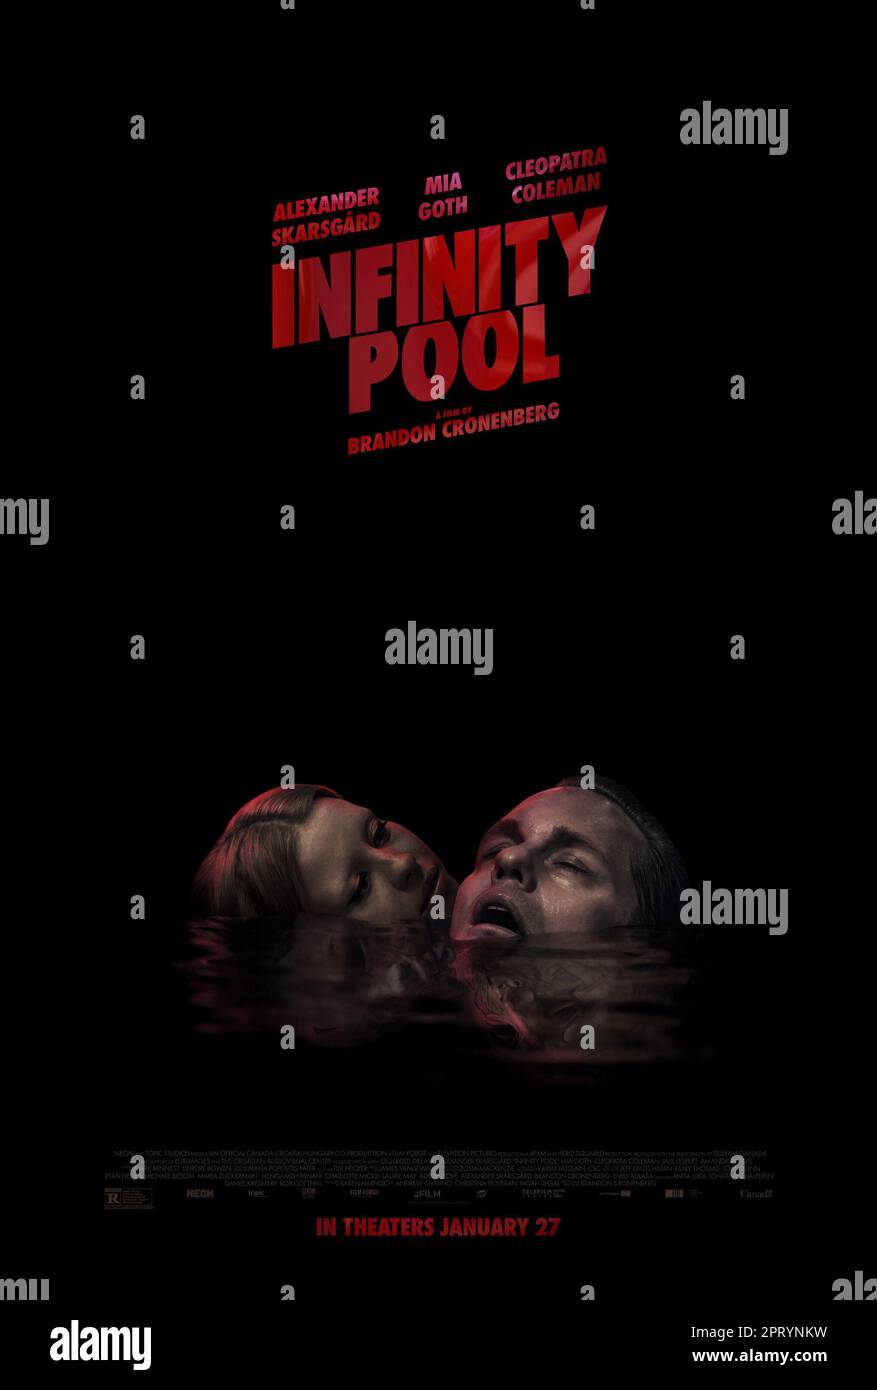 https://c8.alamy.com/comp/2PRYNKW/infinity-pool-film-poster-2PRYNKW.jpg